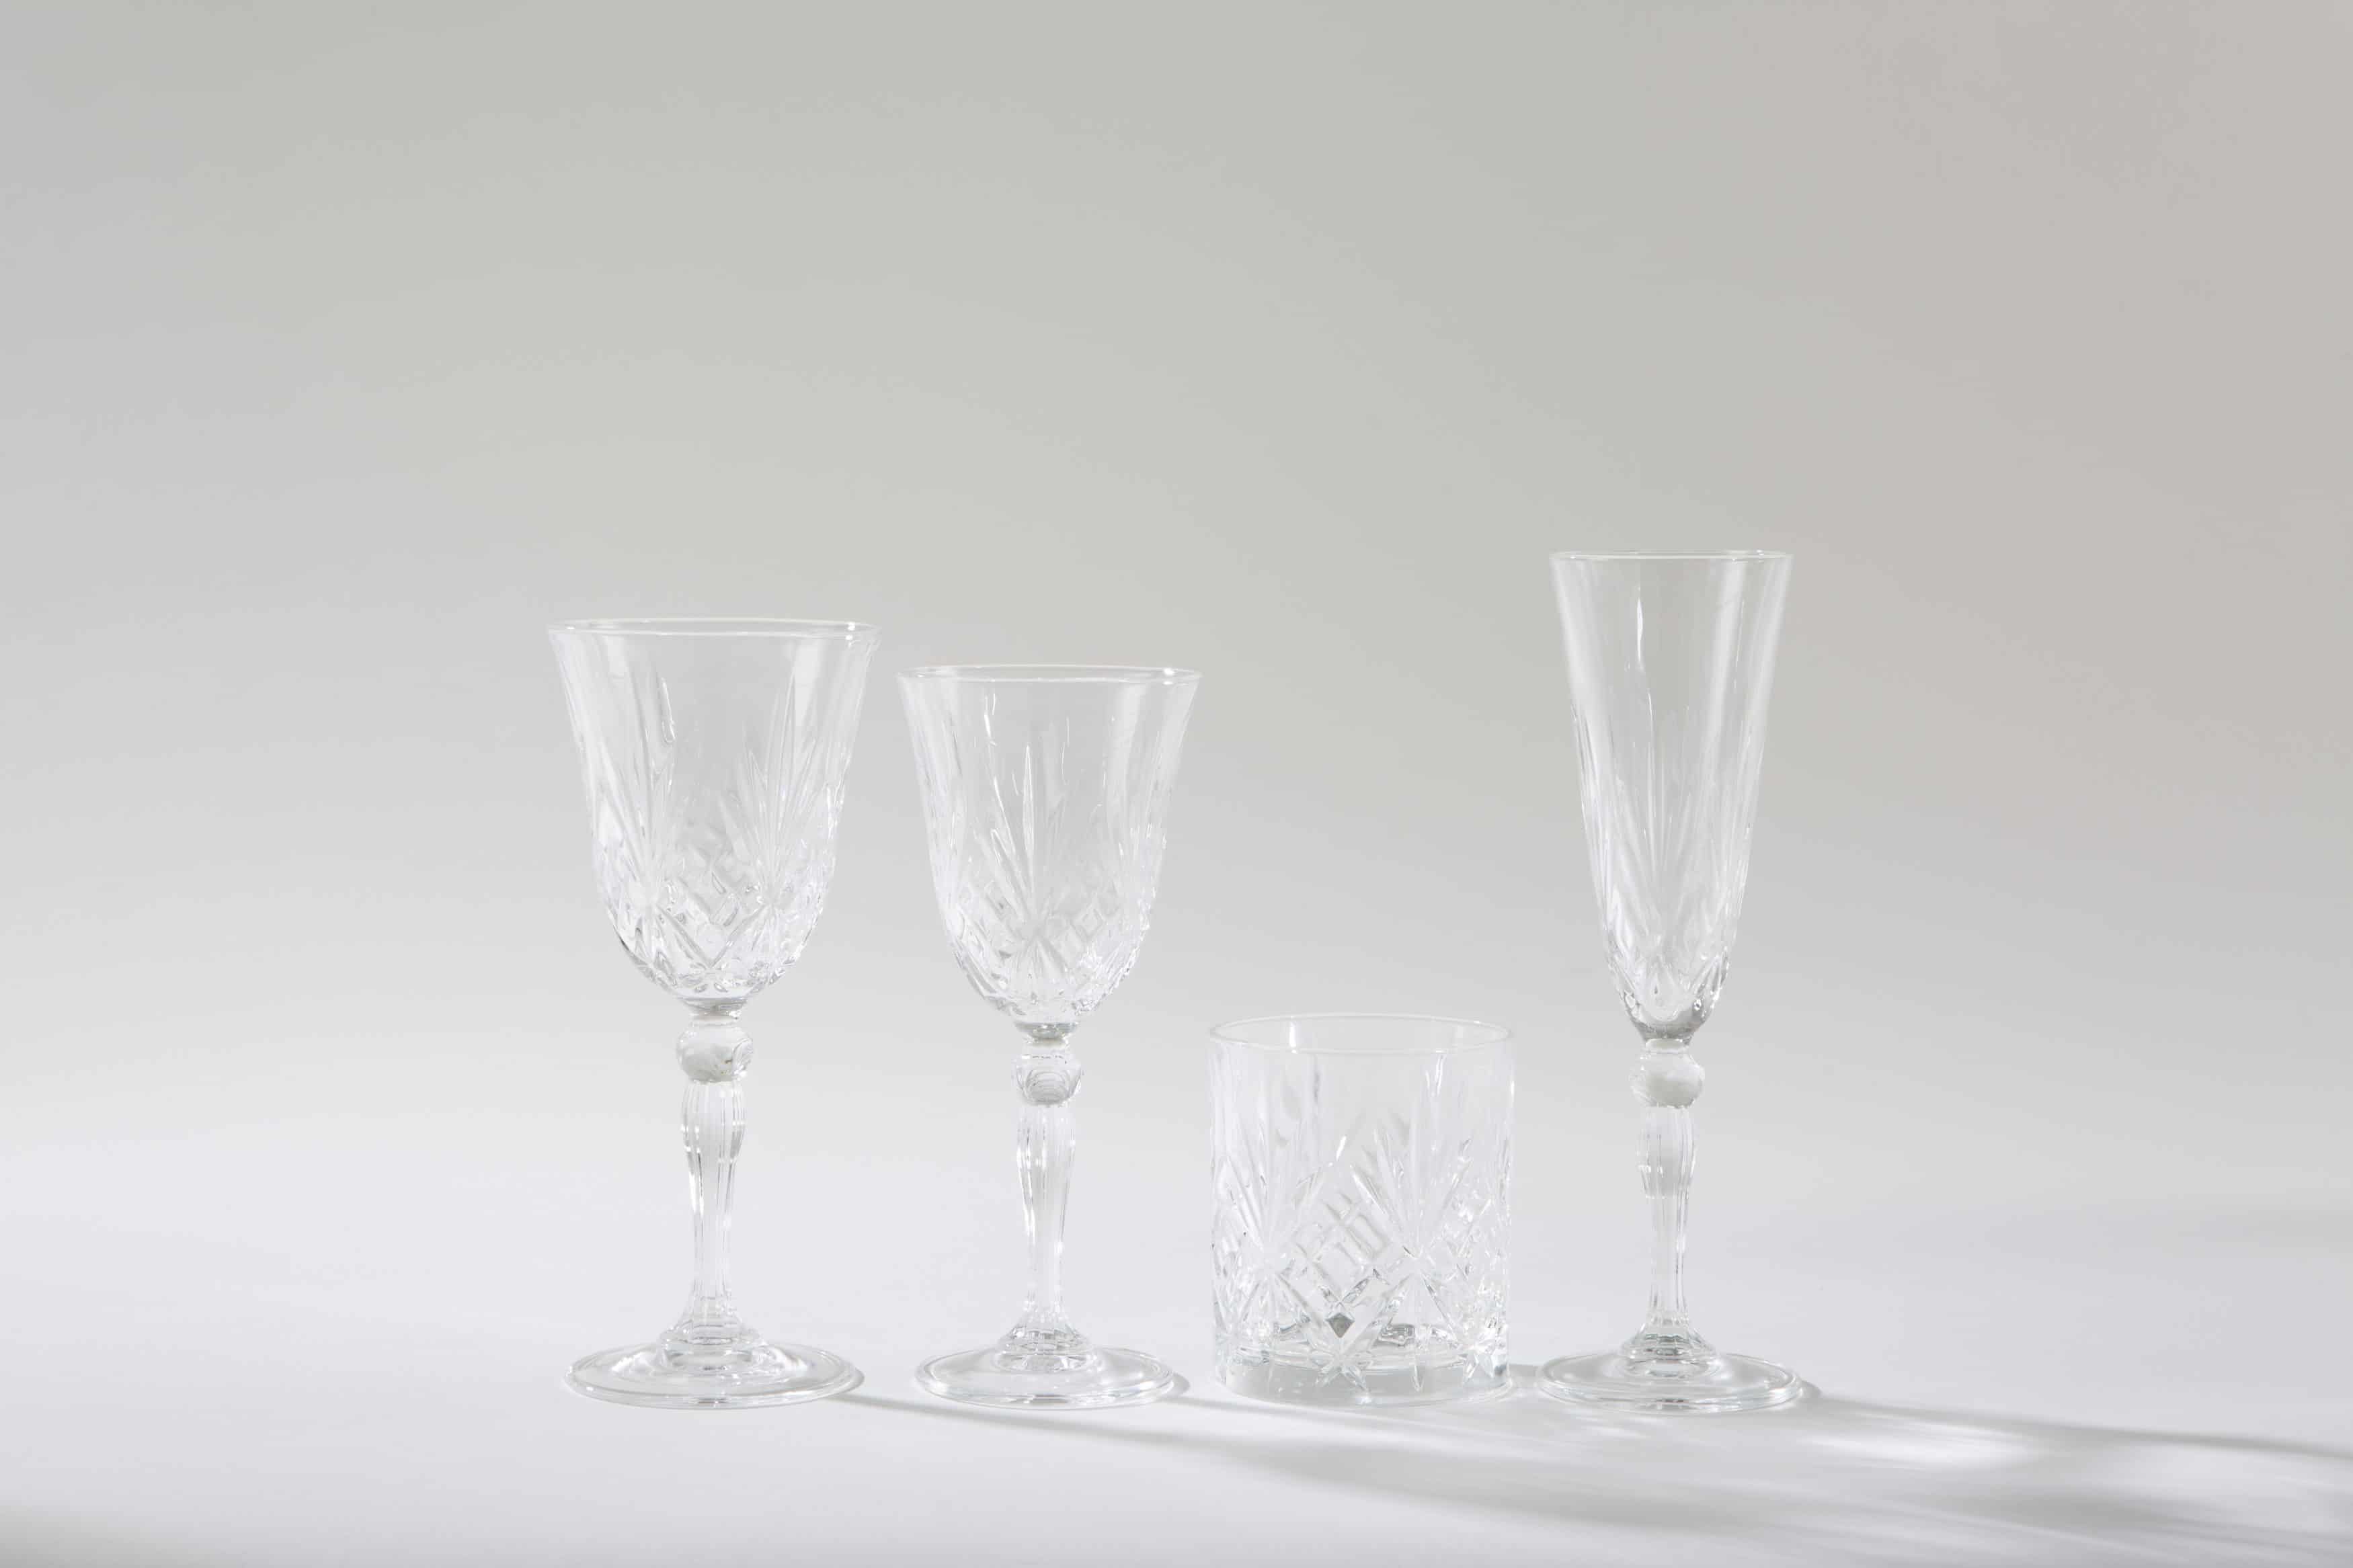 Vintage Gläser mieten, Hochzeitstafel